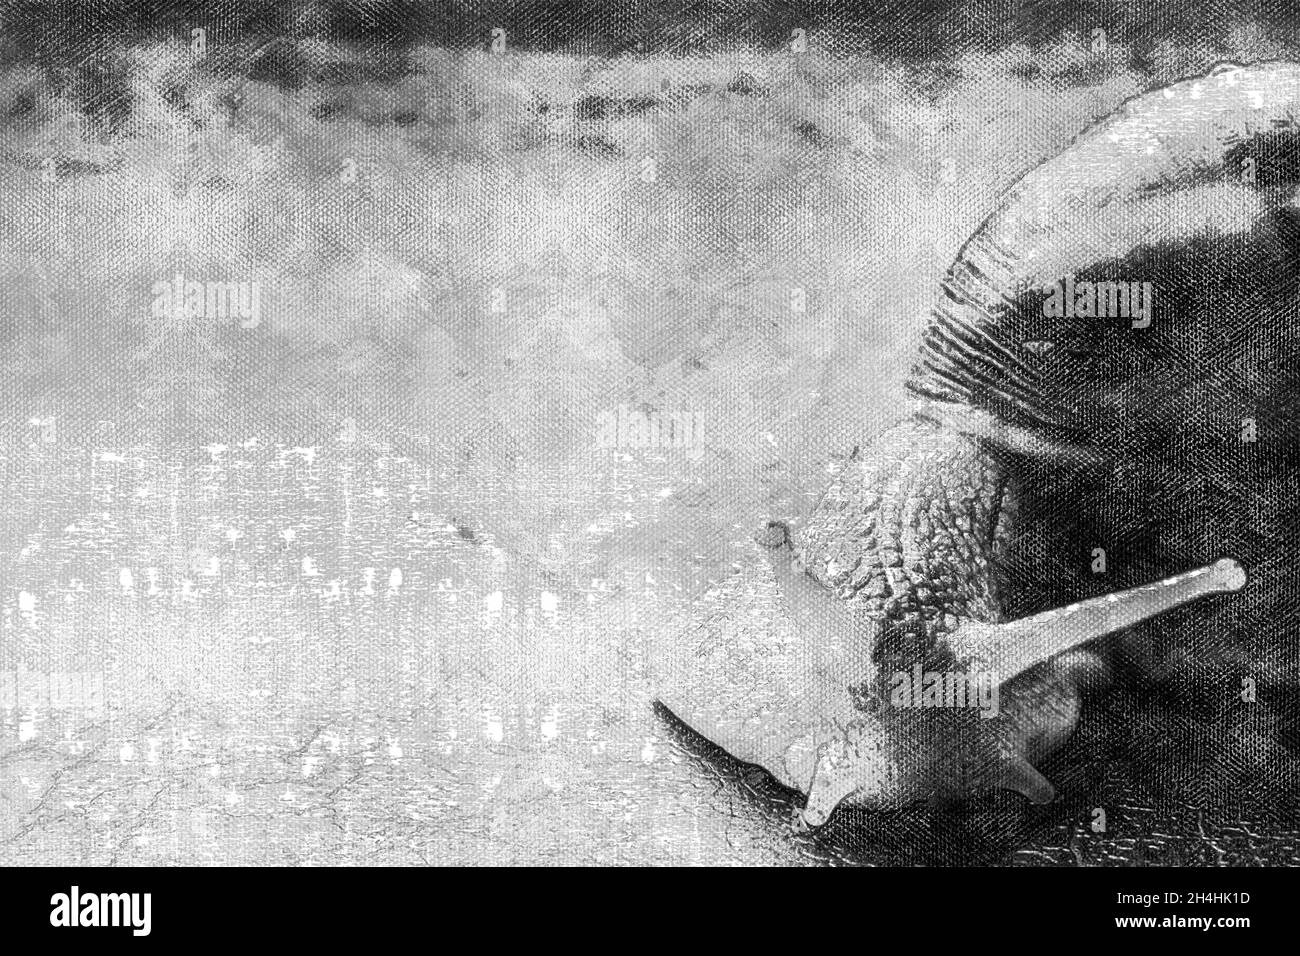 Portrait noir et blanc d'un escargot.Le mollusque rampe à travers la surface avec ses antennes qui dépassent.Aquarelle numérique Banque D'Images